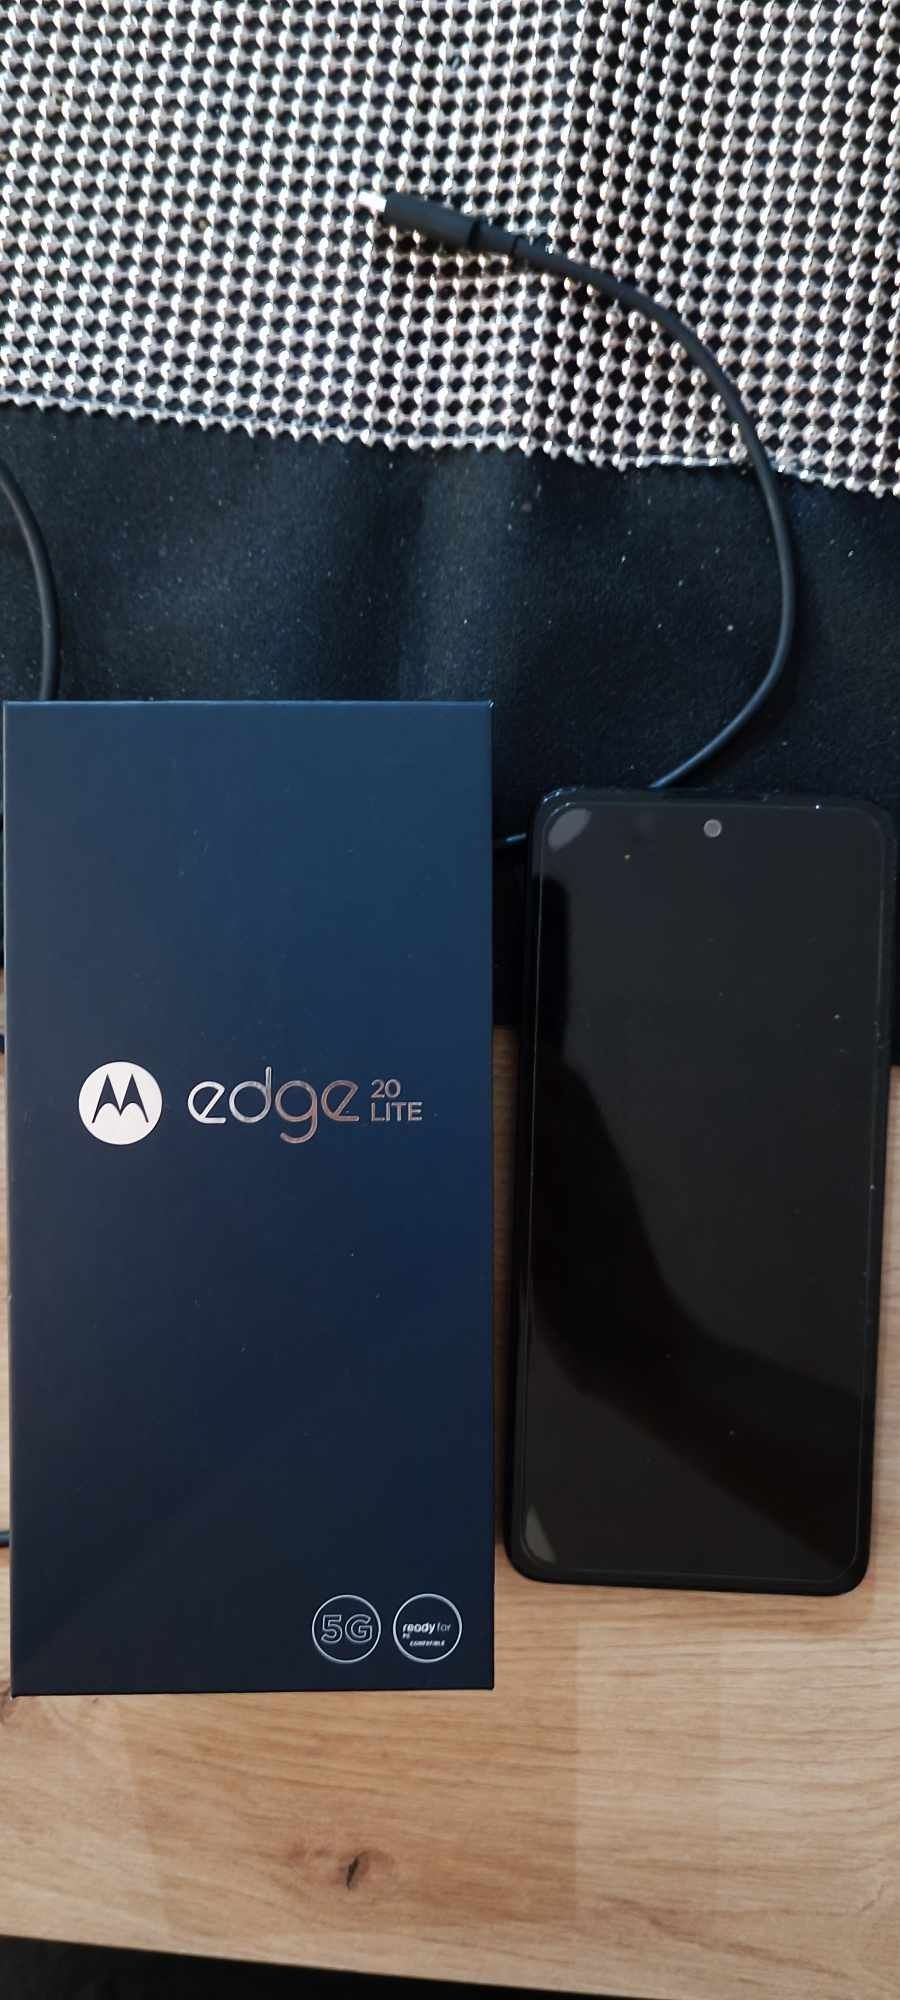 Motorola edge 20 lite